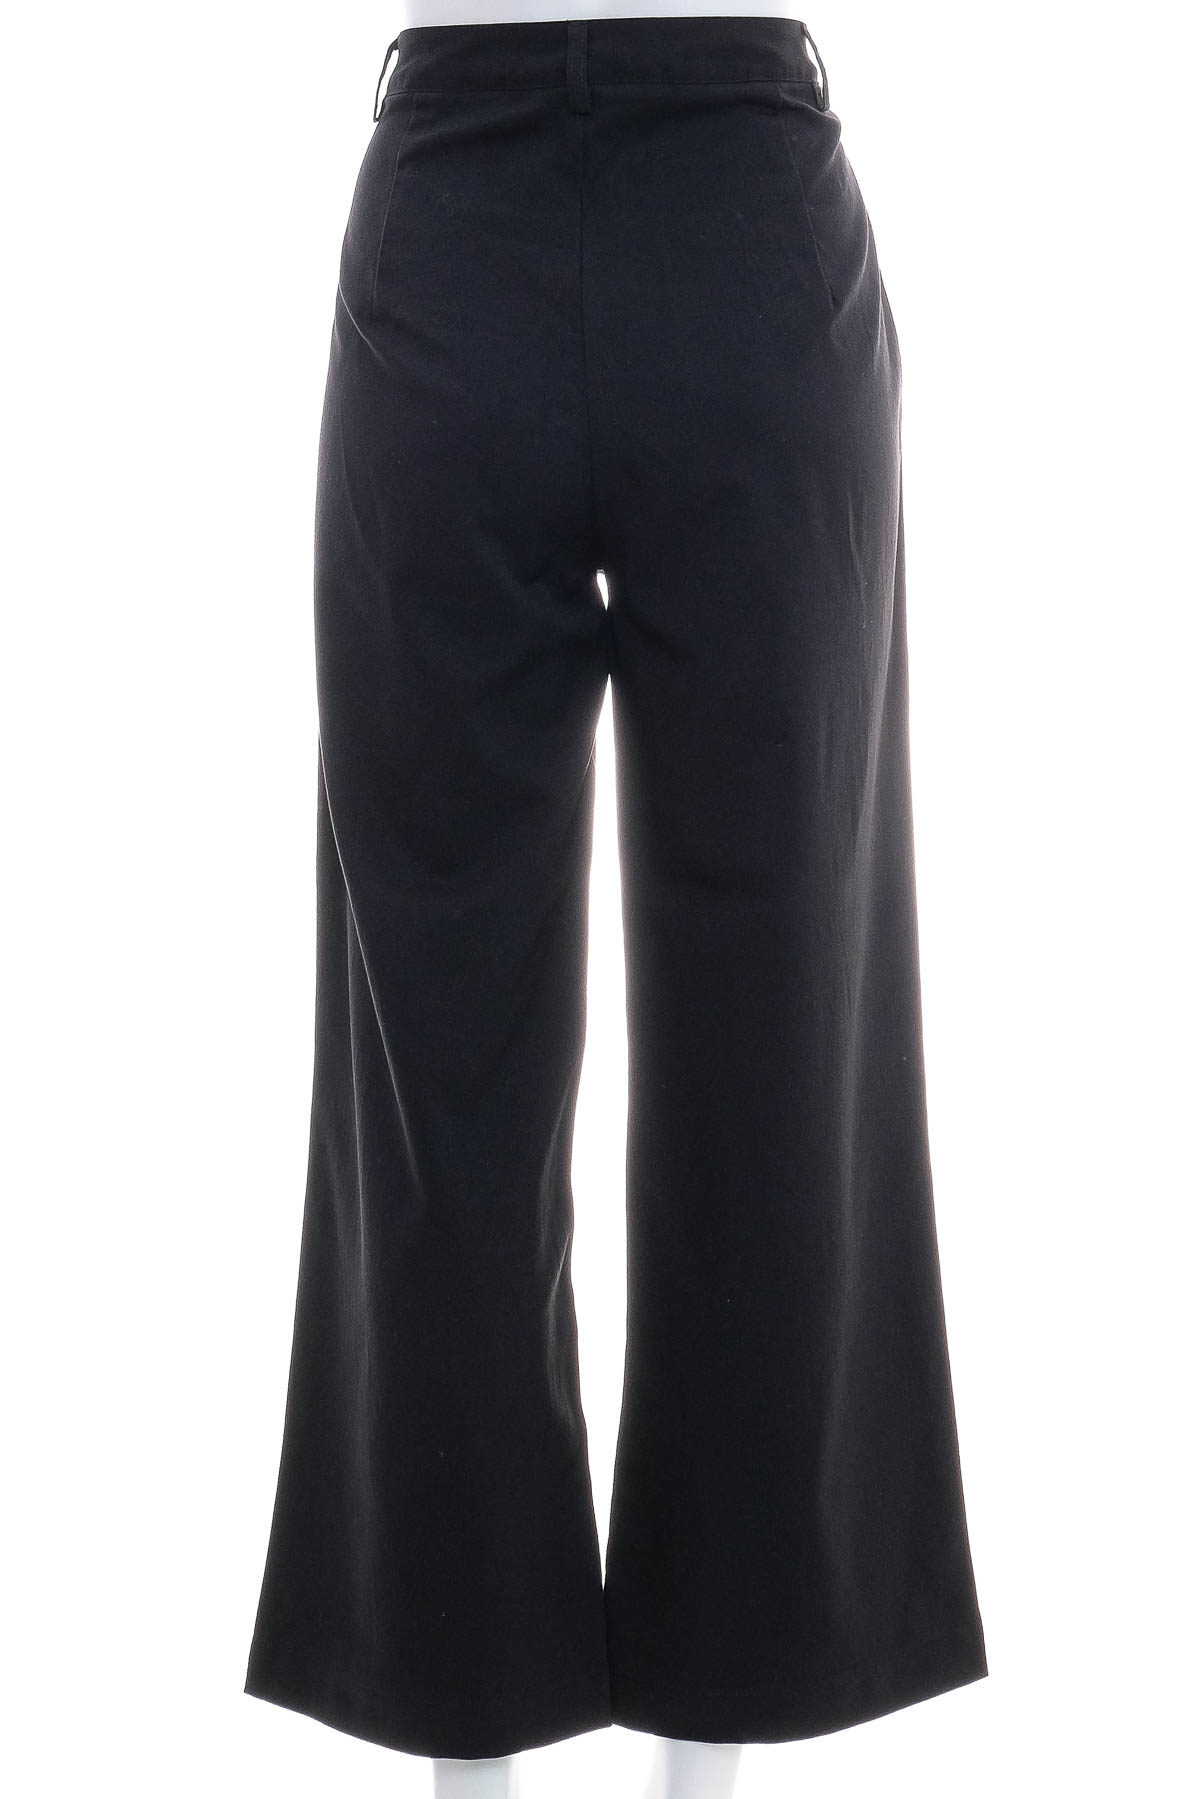 Women's trousers - SHEIN - 1